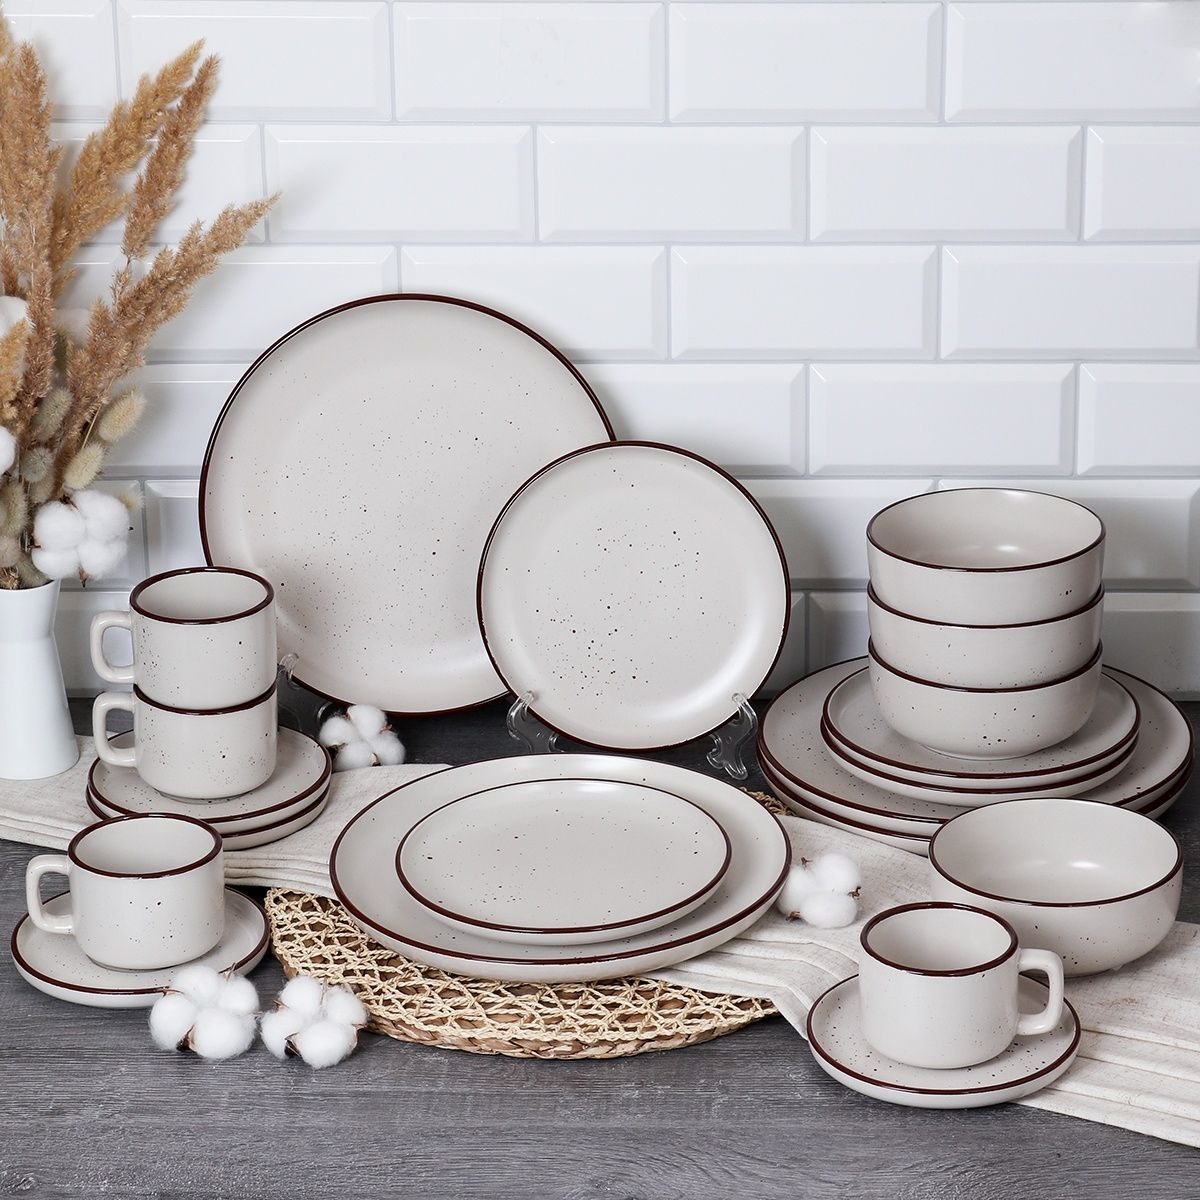 Набор посуды; столовый набор; набор посуды керамика; набор керамической посуды; посуда стильная; посуда современная; набор посуды 20 предметов; набор посуды на 4 персоны; 